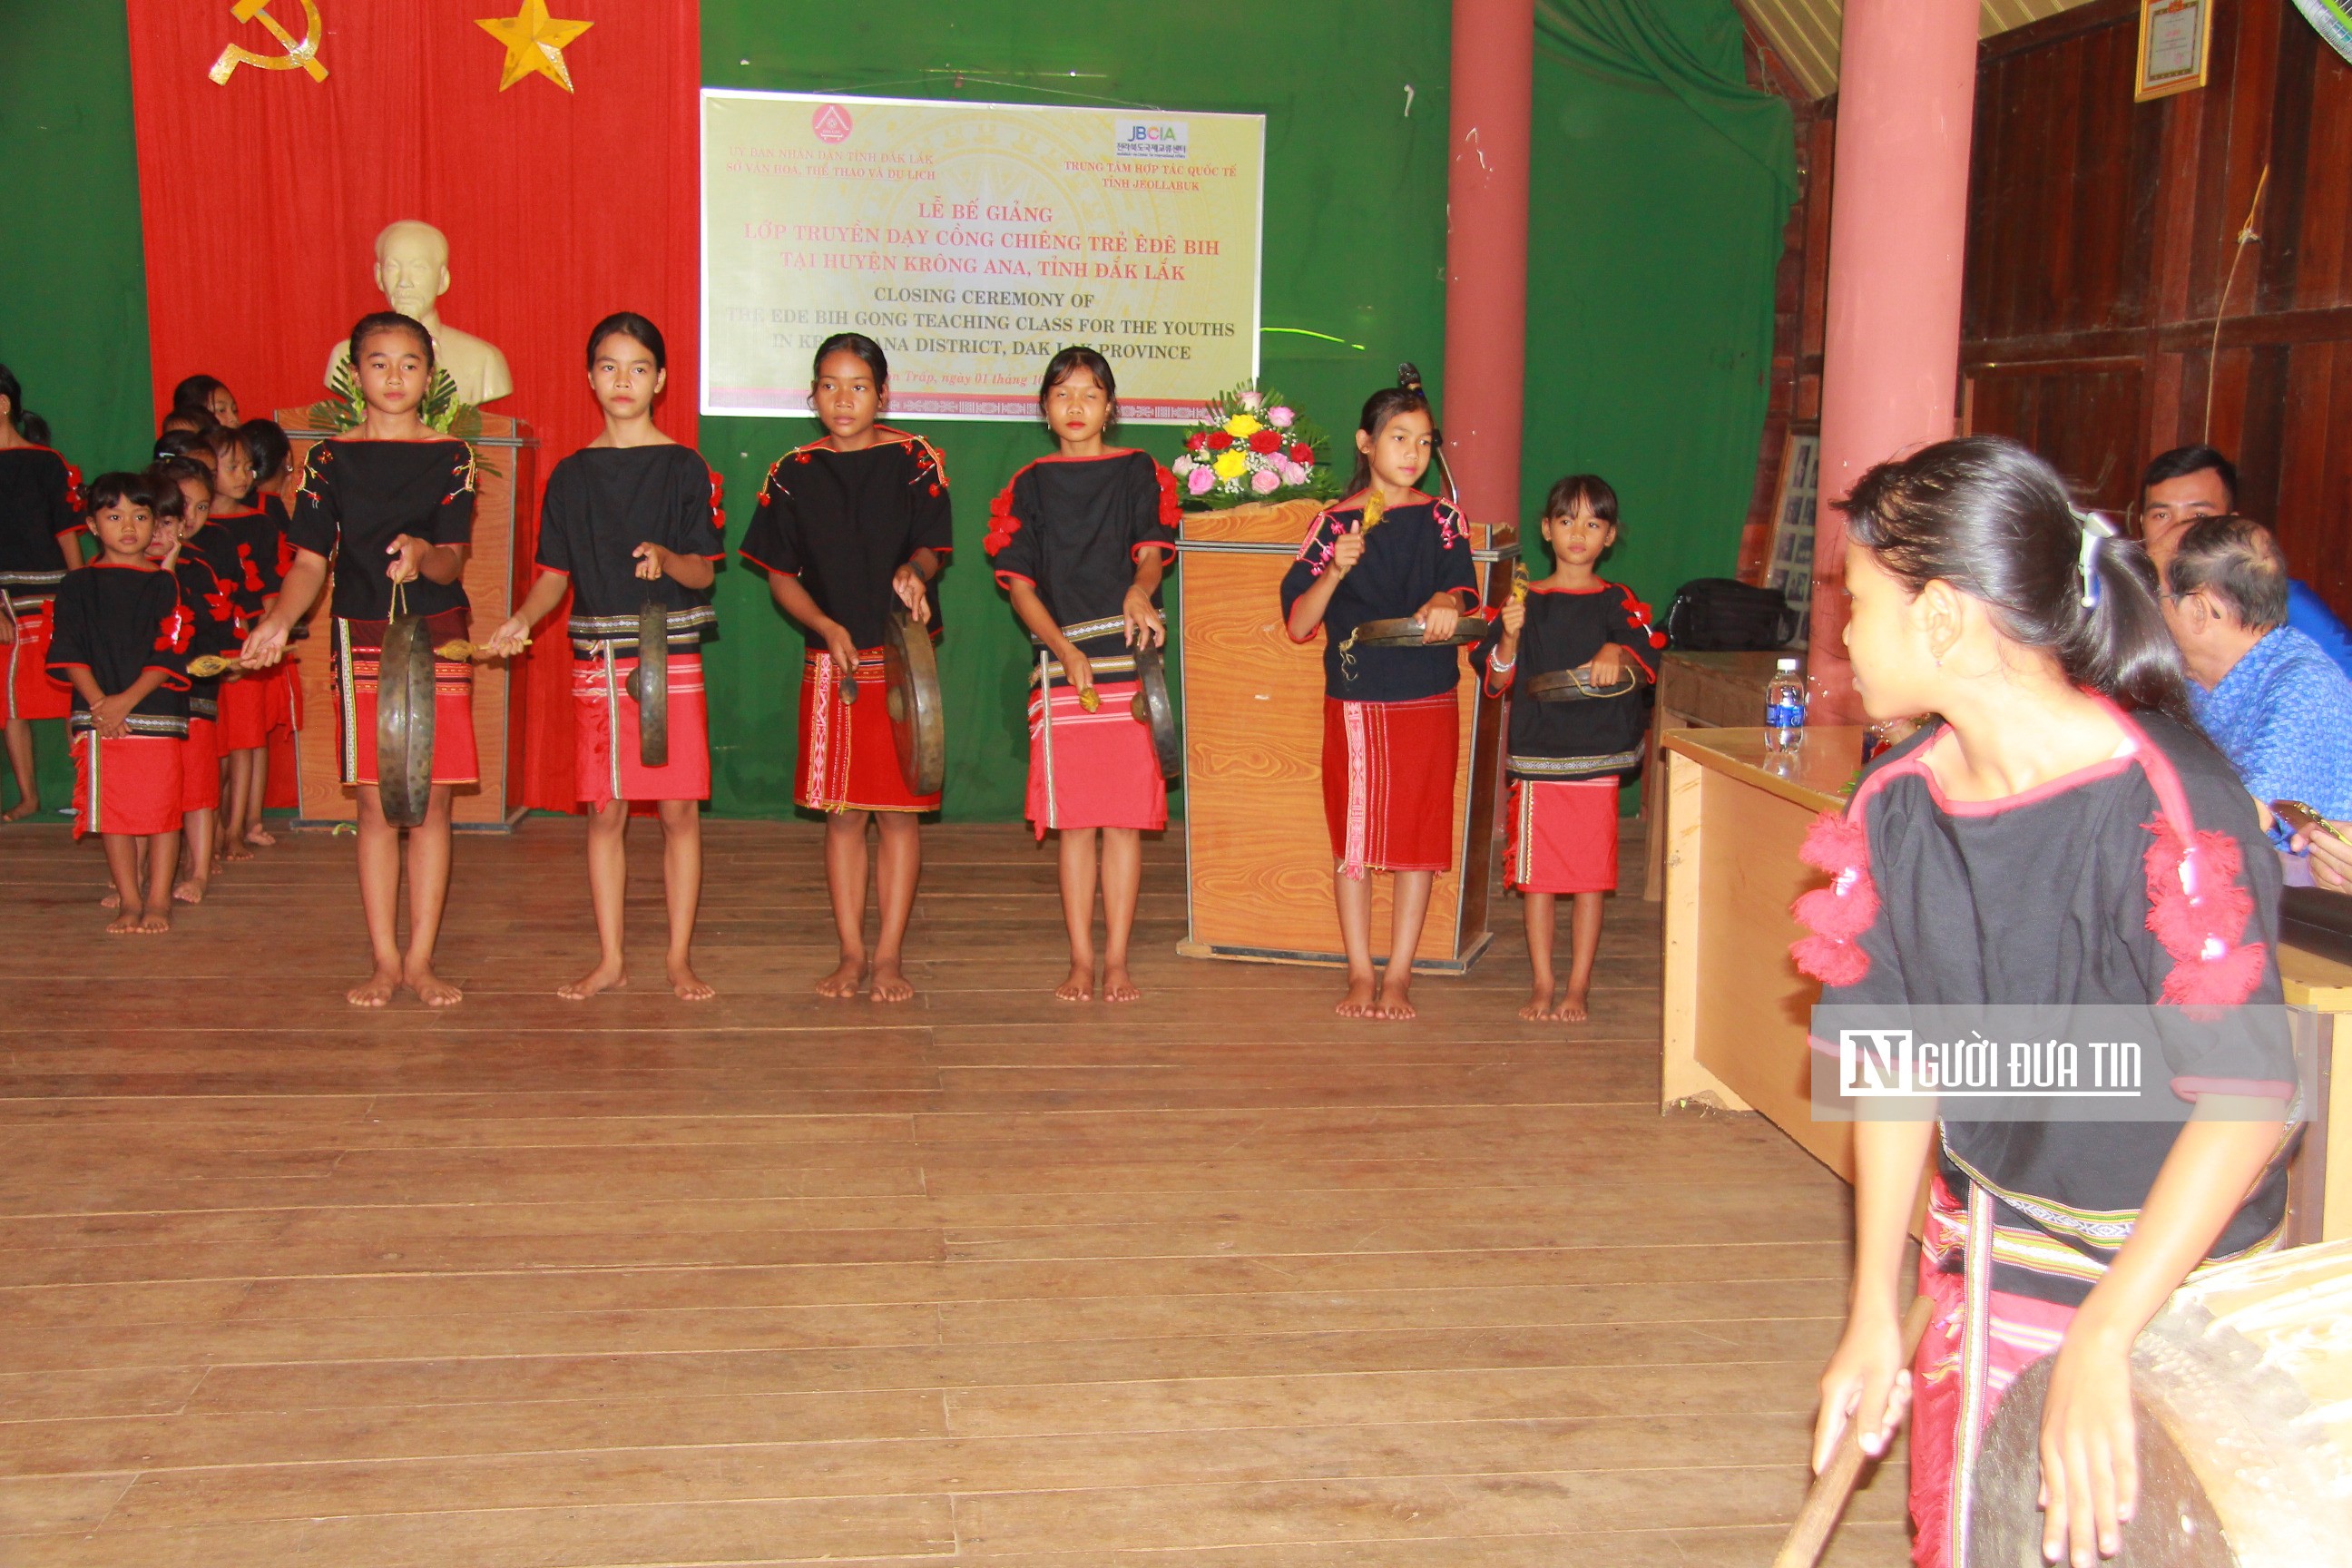 Văn hoá - Trăn trở của nghệ nhân “cầm trịch” đội chiêng nữ duy nhất ở Đắk Lắk (Hình 4).